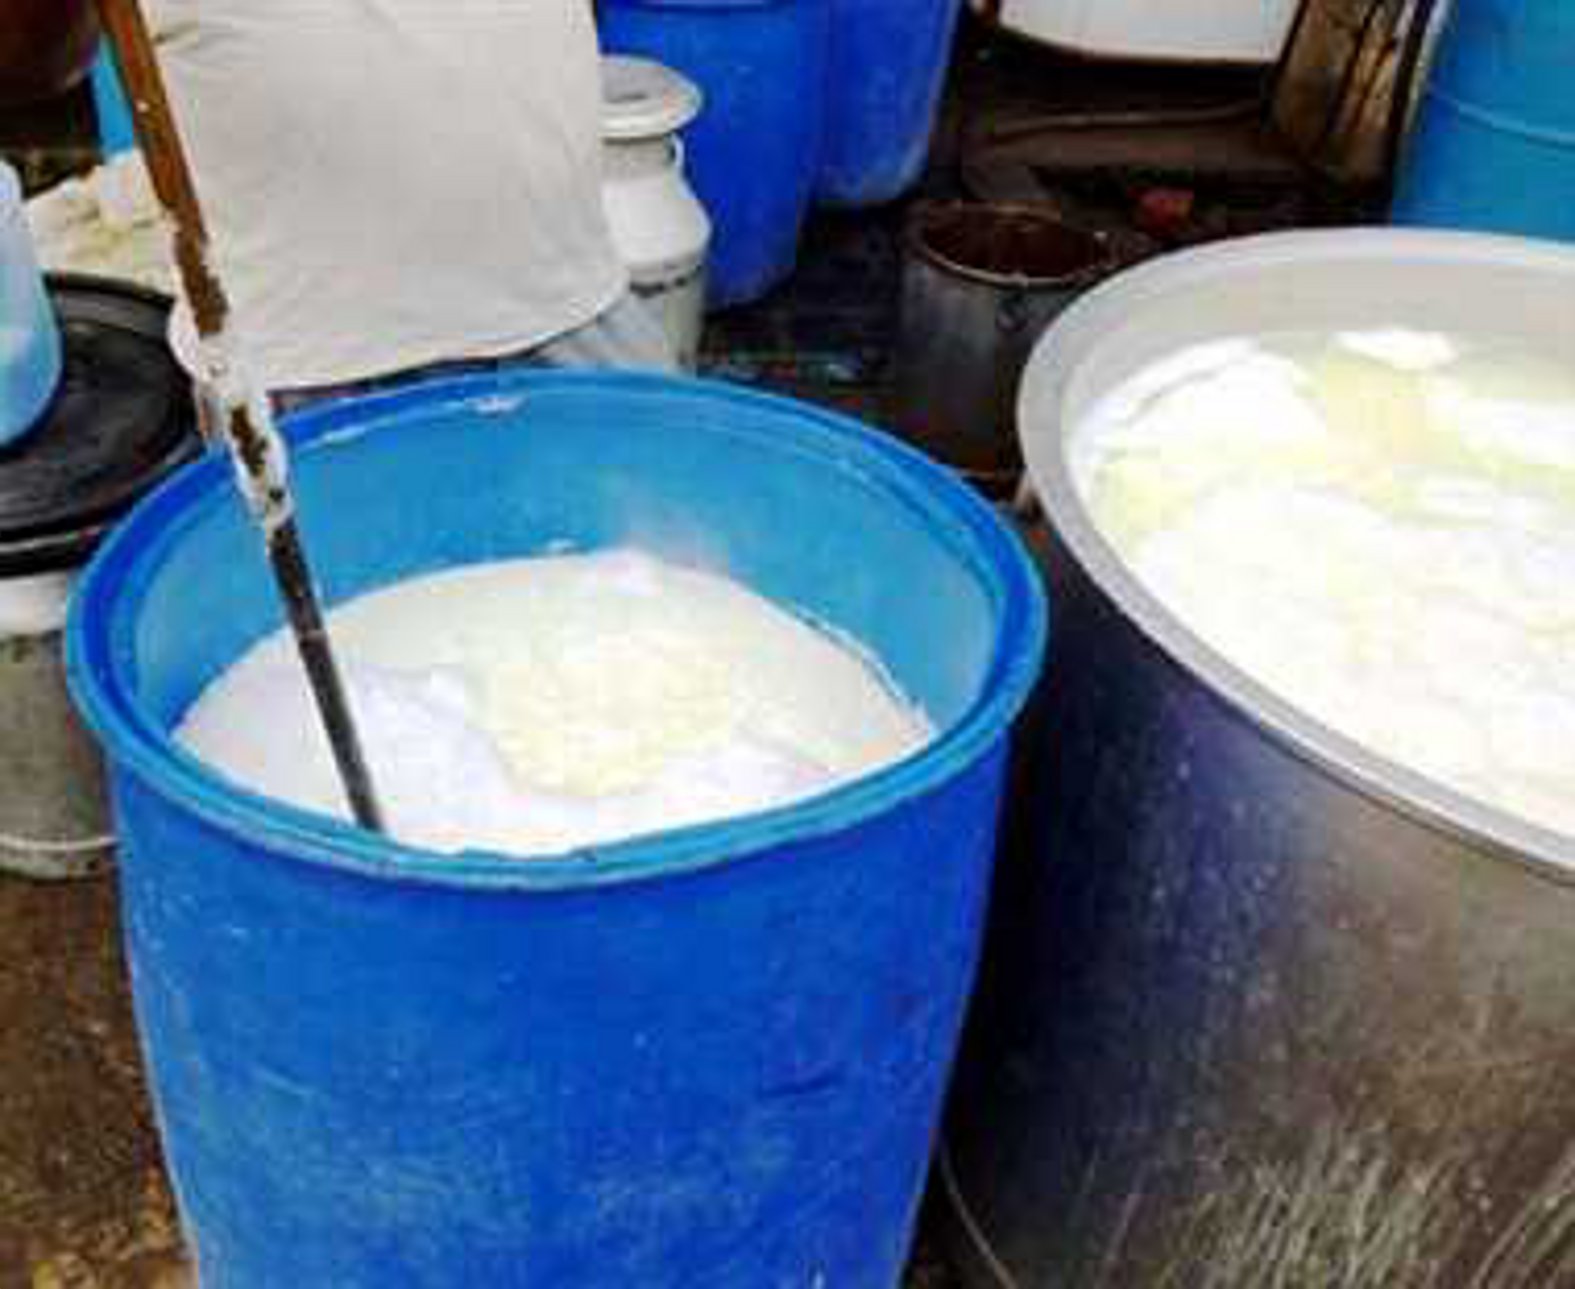 मिलावट का खर्च 6 रुपए लीटर, बेचते 40 के भाव, चूना मिलाने से लैब में भी नहीं पकड़ा जाता नकली दूध